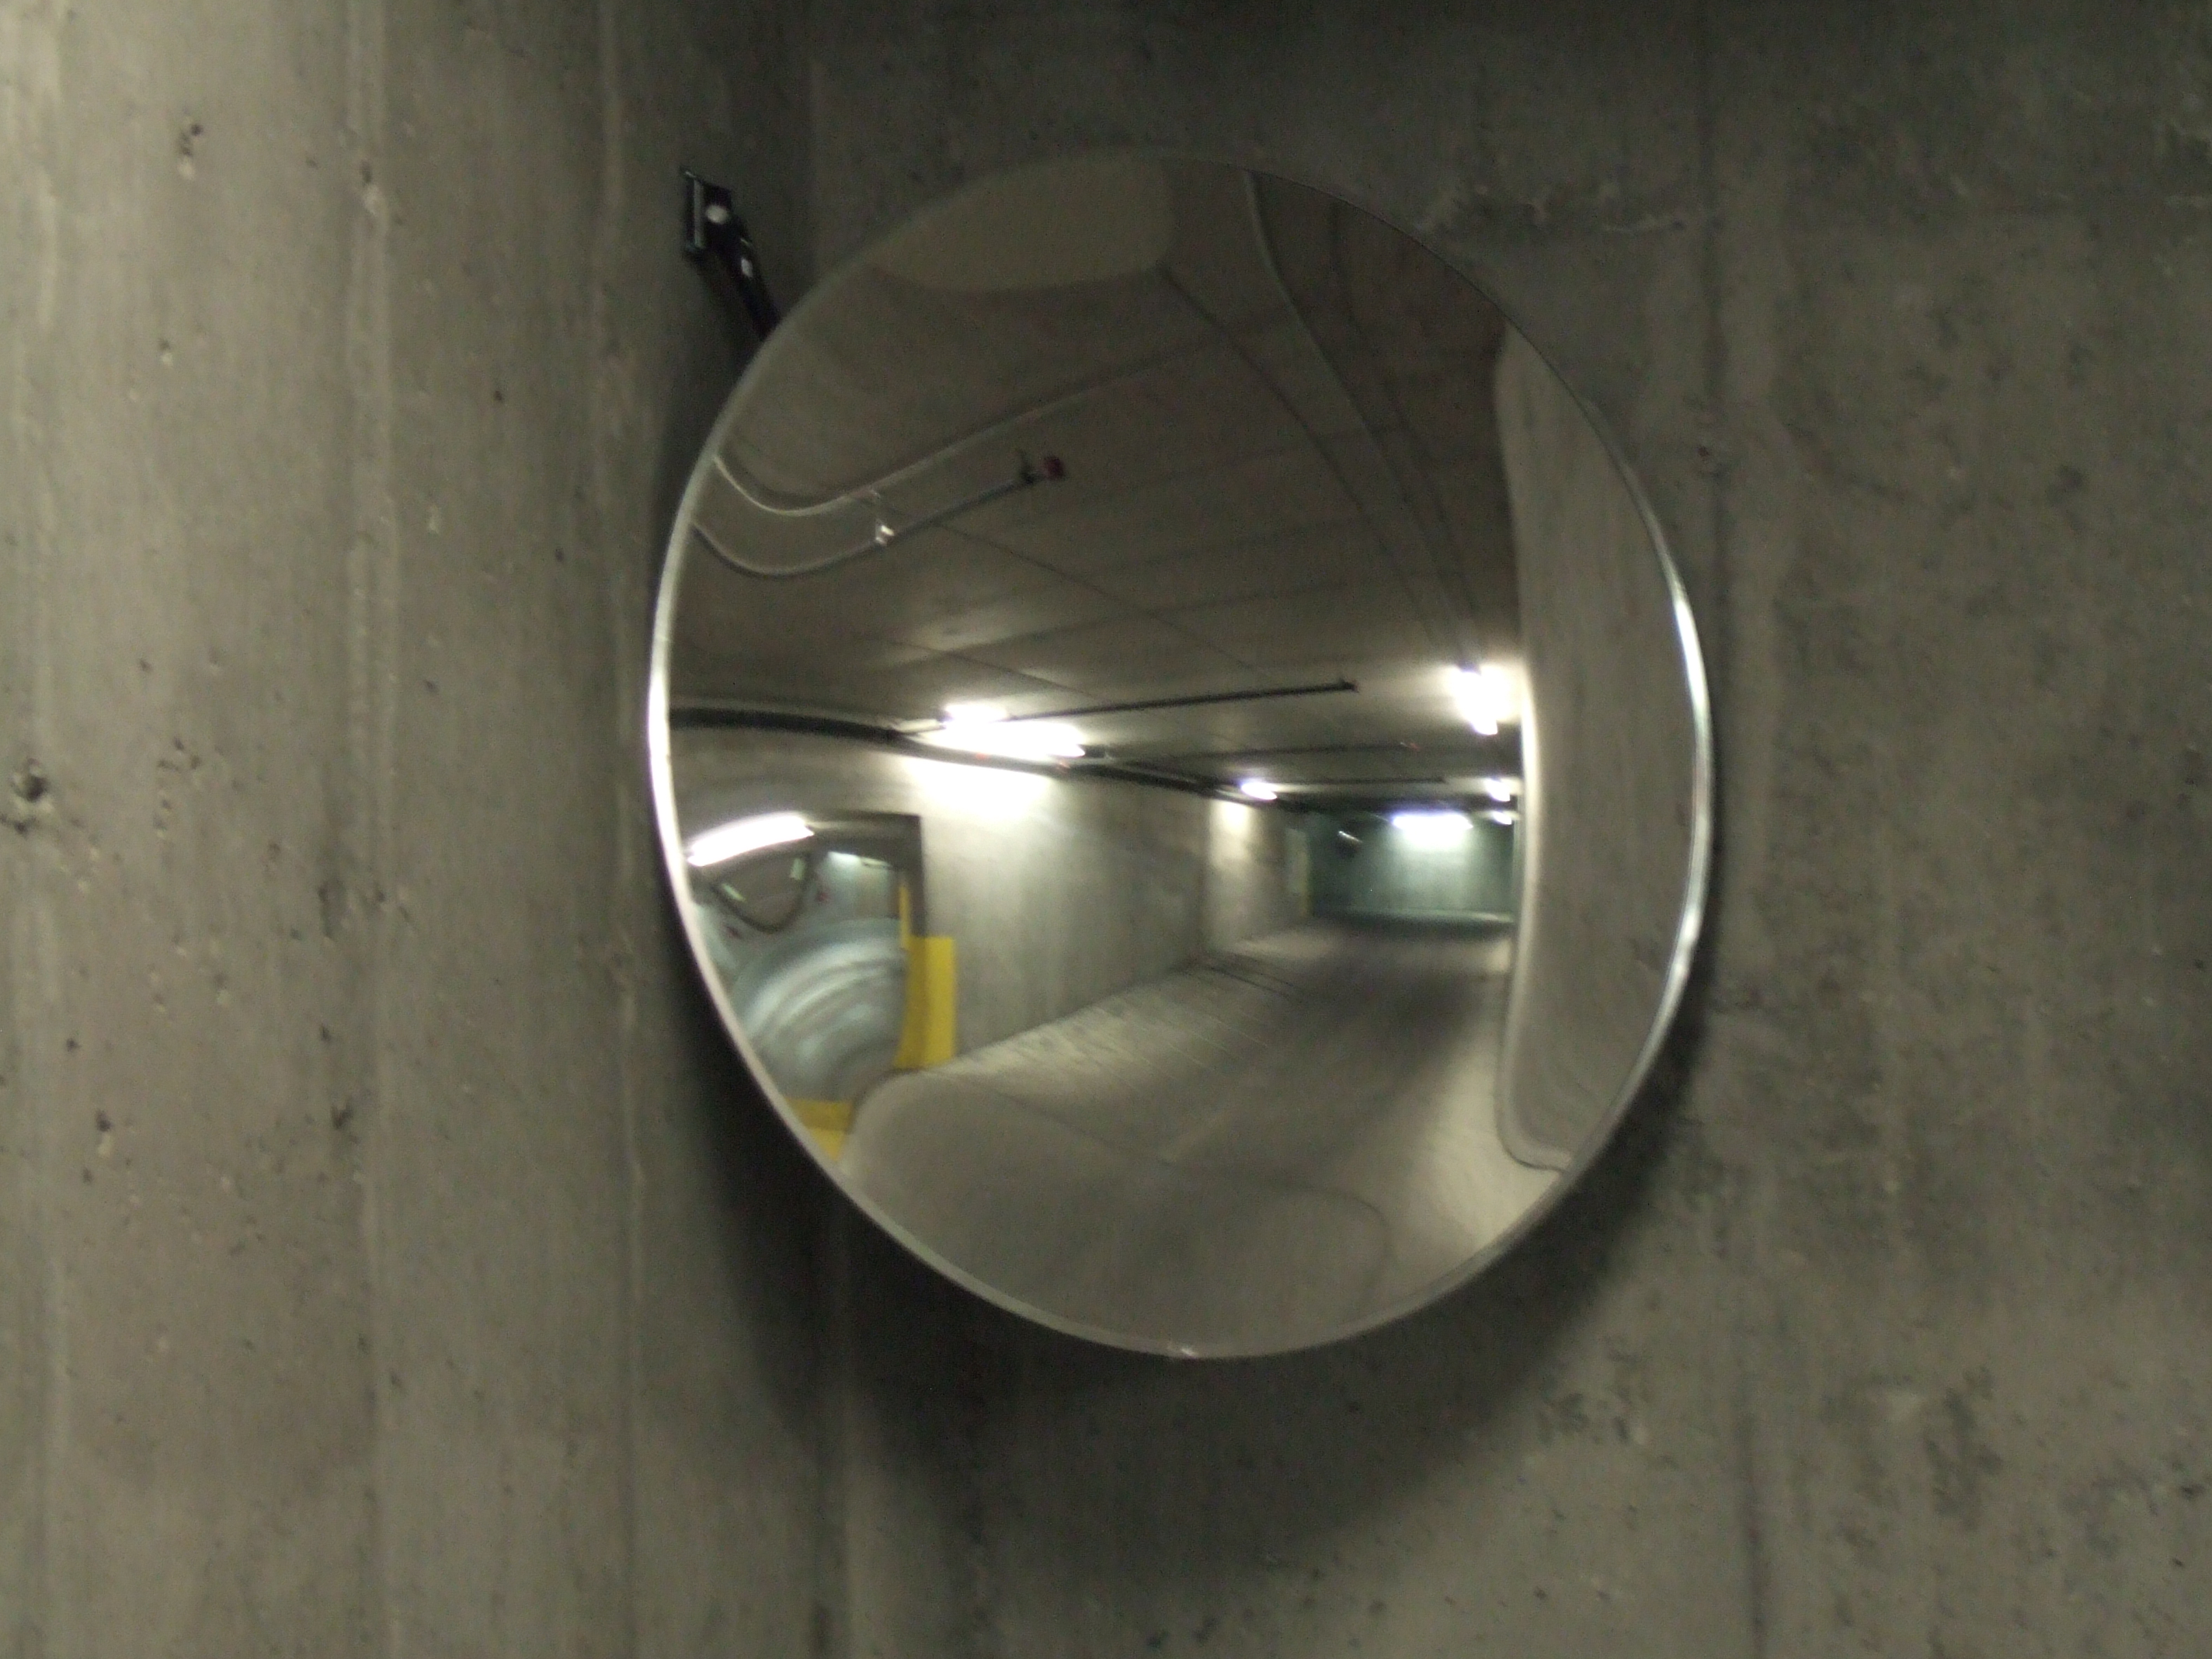 Miroir convexe extérieur avec bras télescopique SGI549, #TQSGI549000, Montréal, Québec